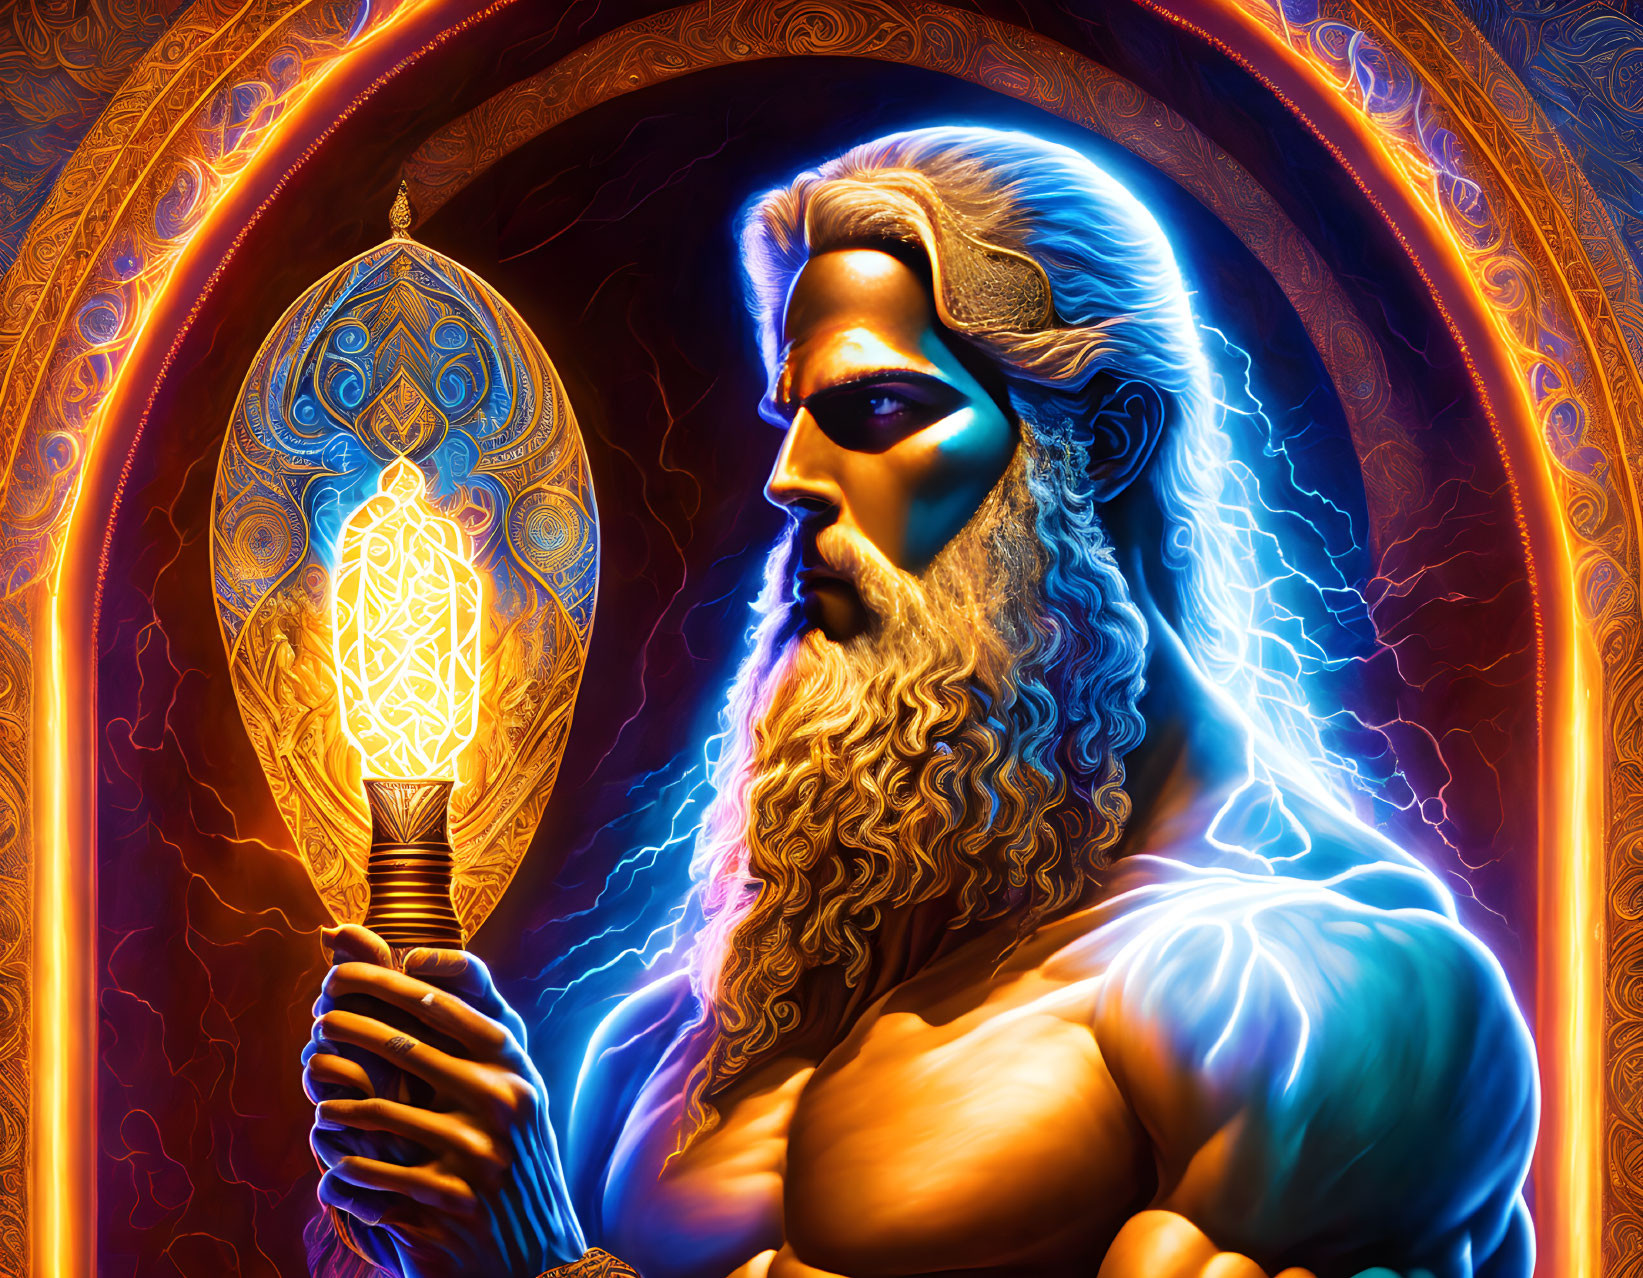 Zeus - The original Allfather